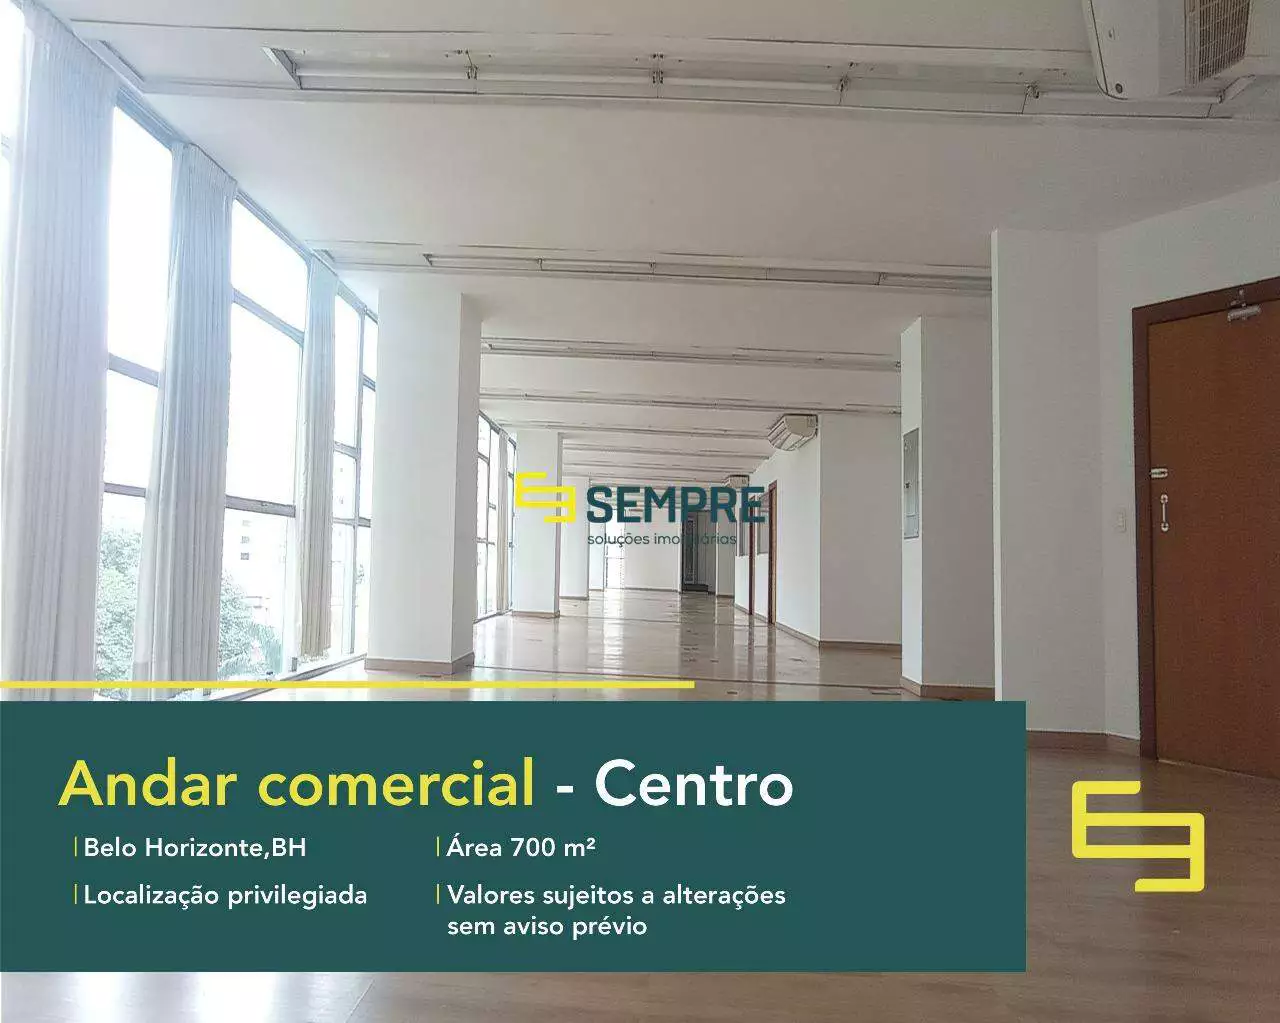 Laje corporativa para alugar em Belo Horizonte - Vicente de Araujo. O estabelecimento comercial conta, sobretudo, com área de 700 m².